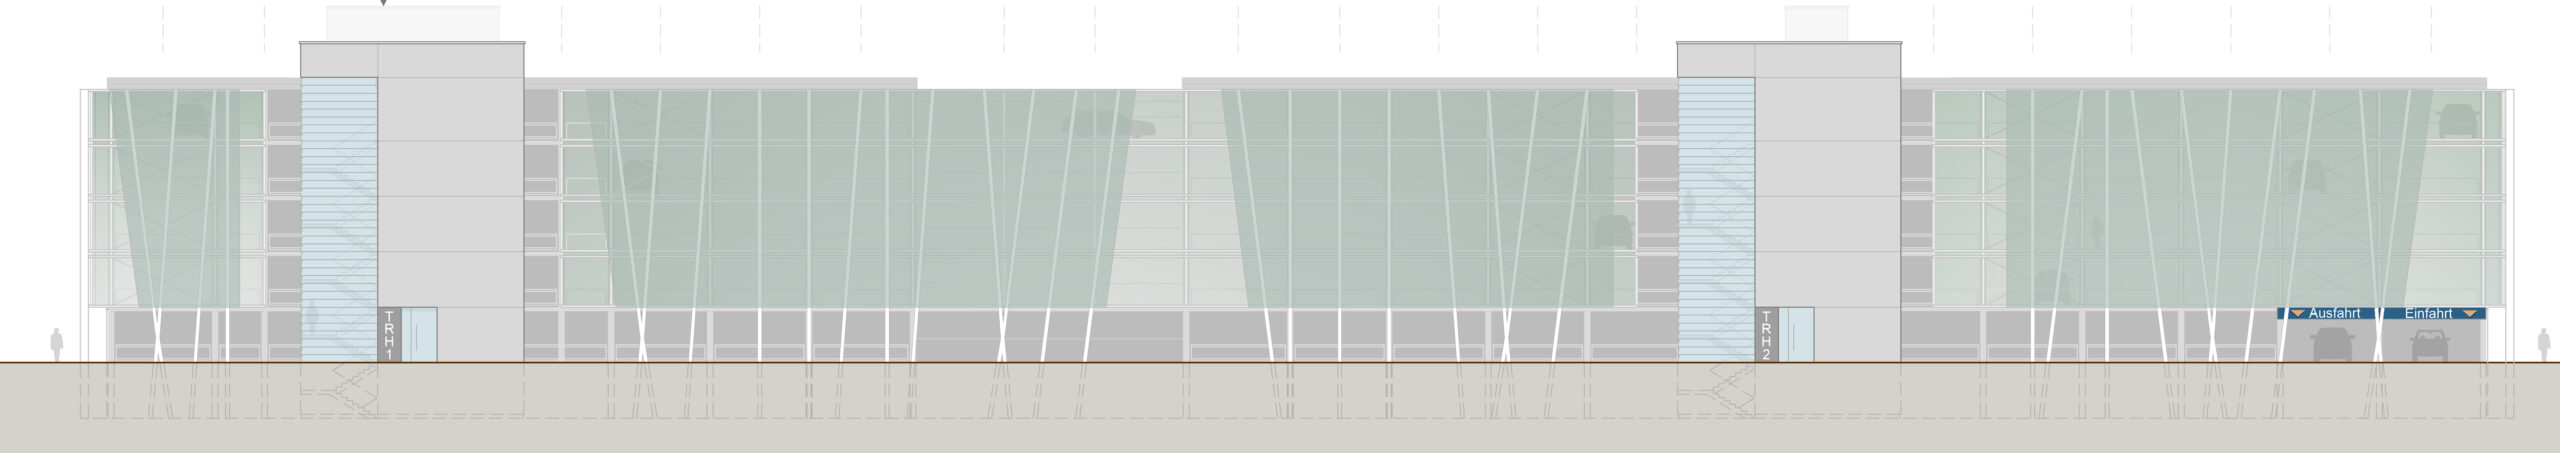 Skizze: Die begrünte Fassade und das begrünte Dach des neuen Parkhauses sind nicht nur optisch attraktiv, sondern tragen auch aktiv zu einer besseren Luftqualität auf dem Campus bei